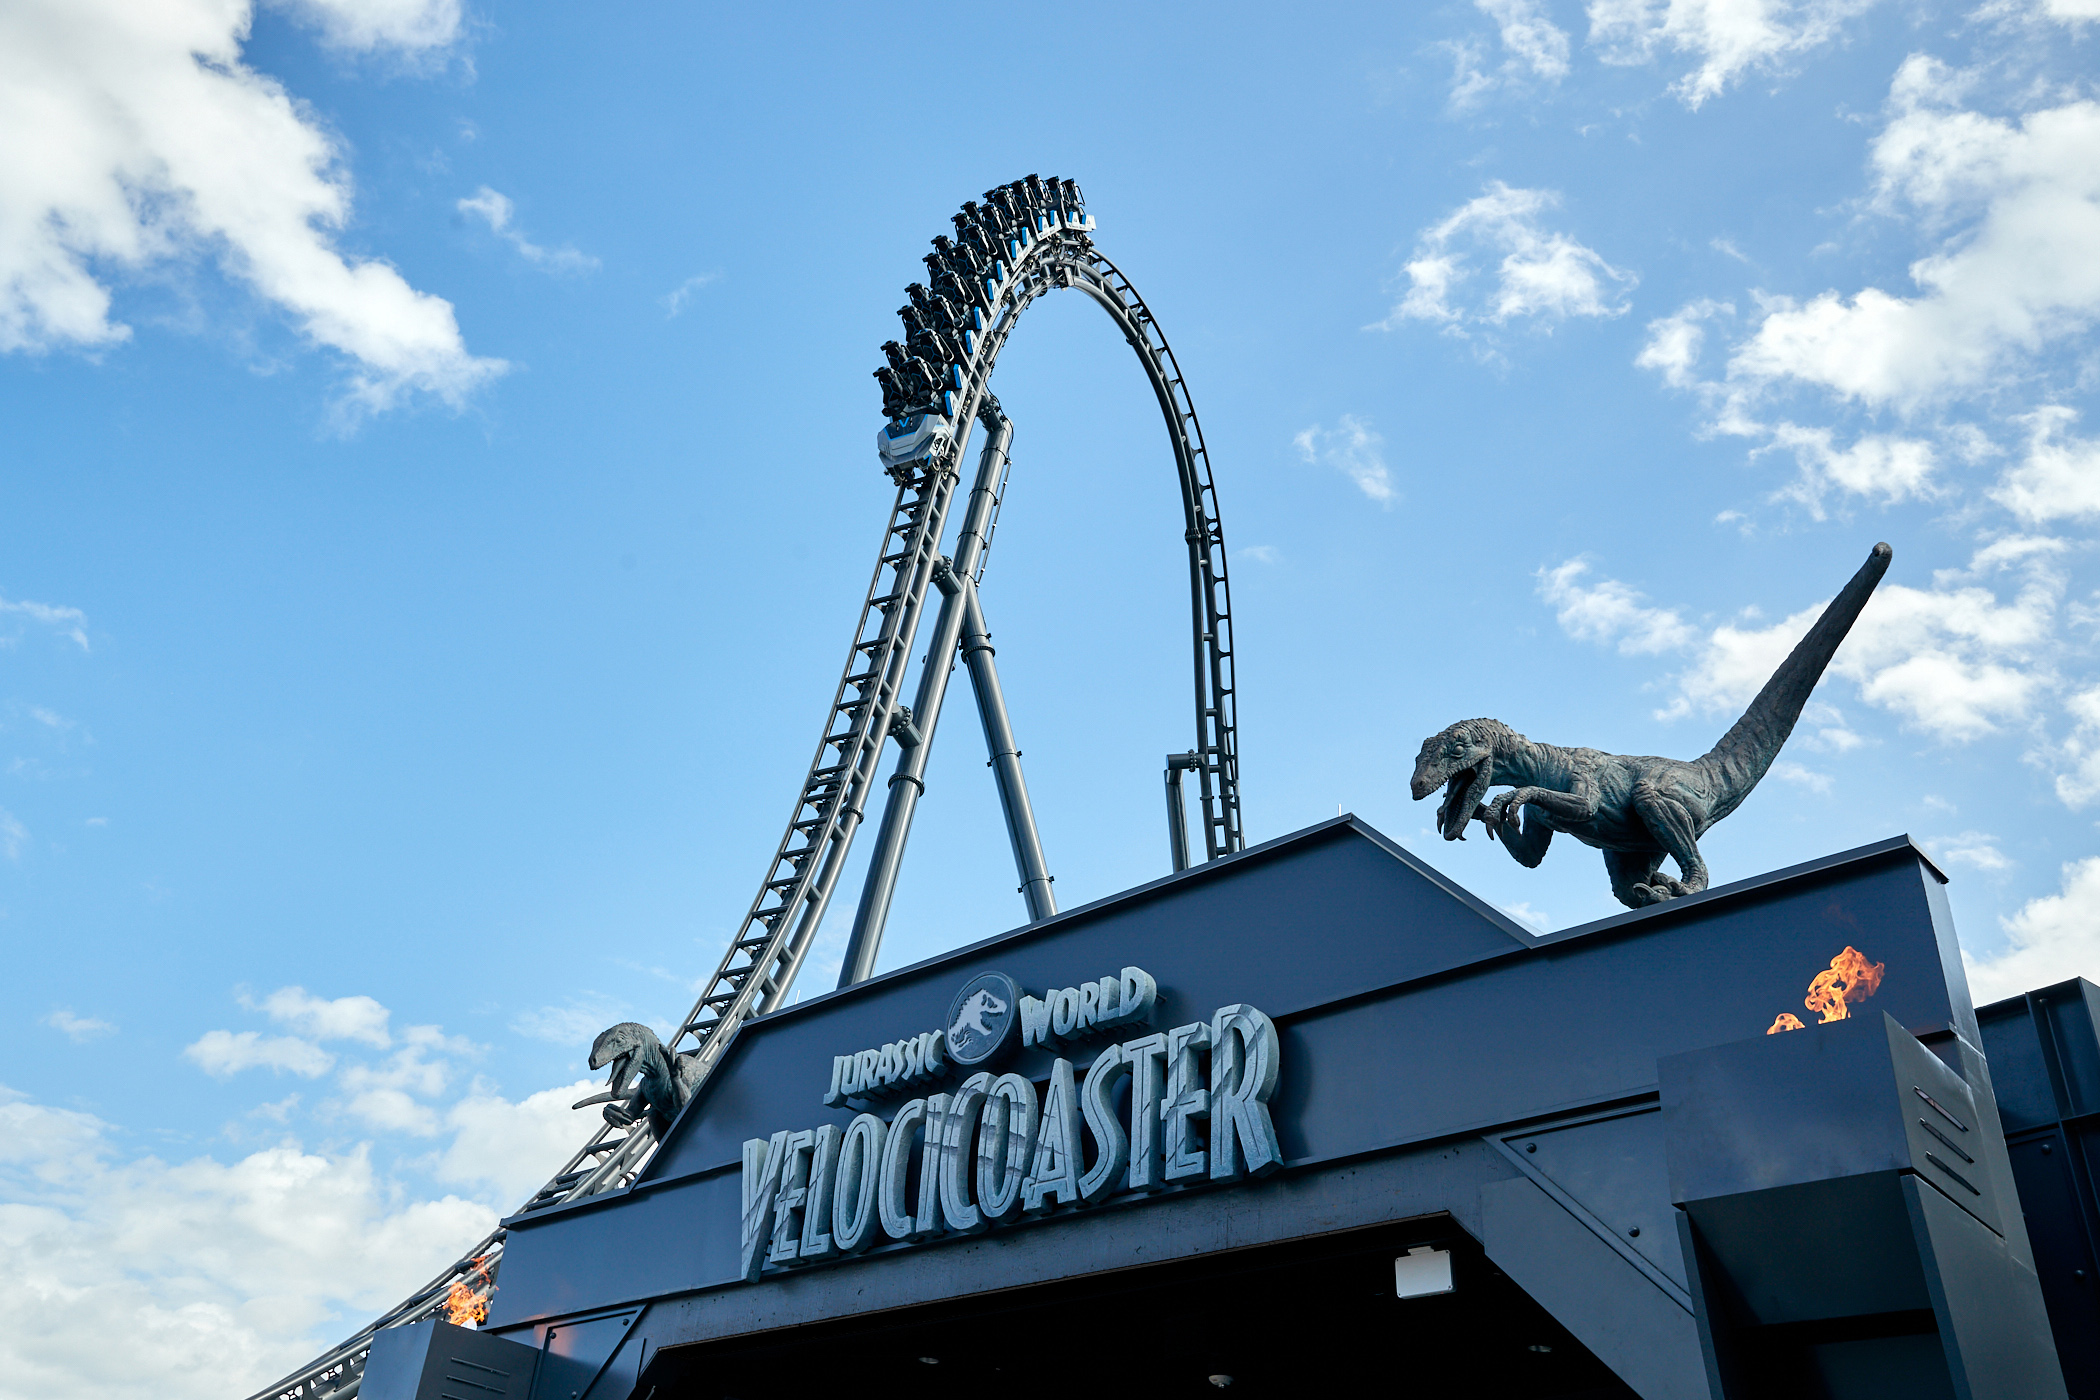 Jurassic World VelociCoaster Opening this June!